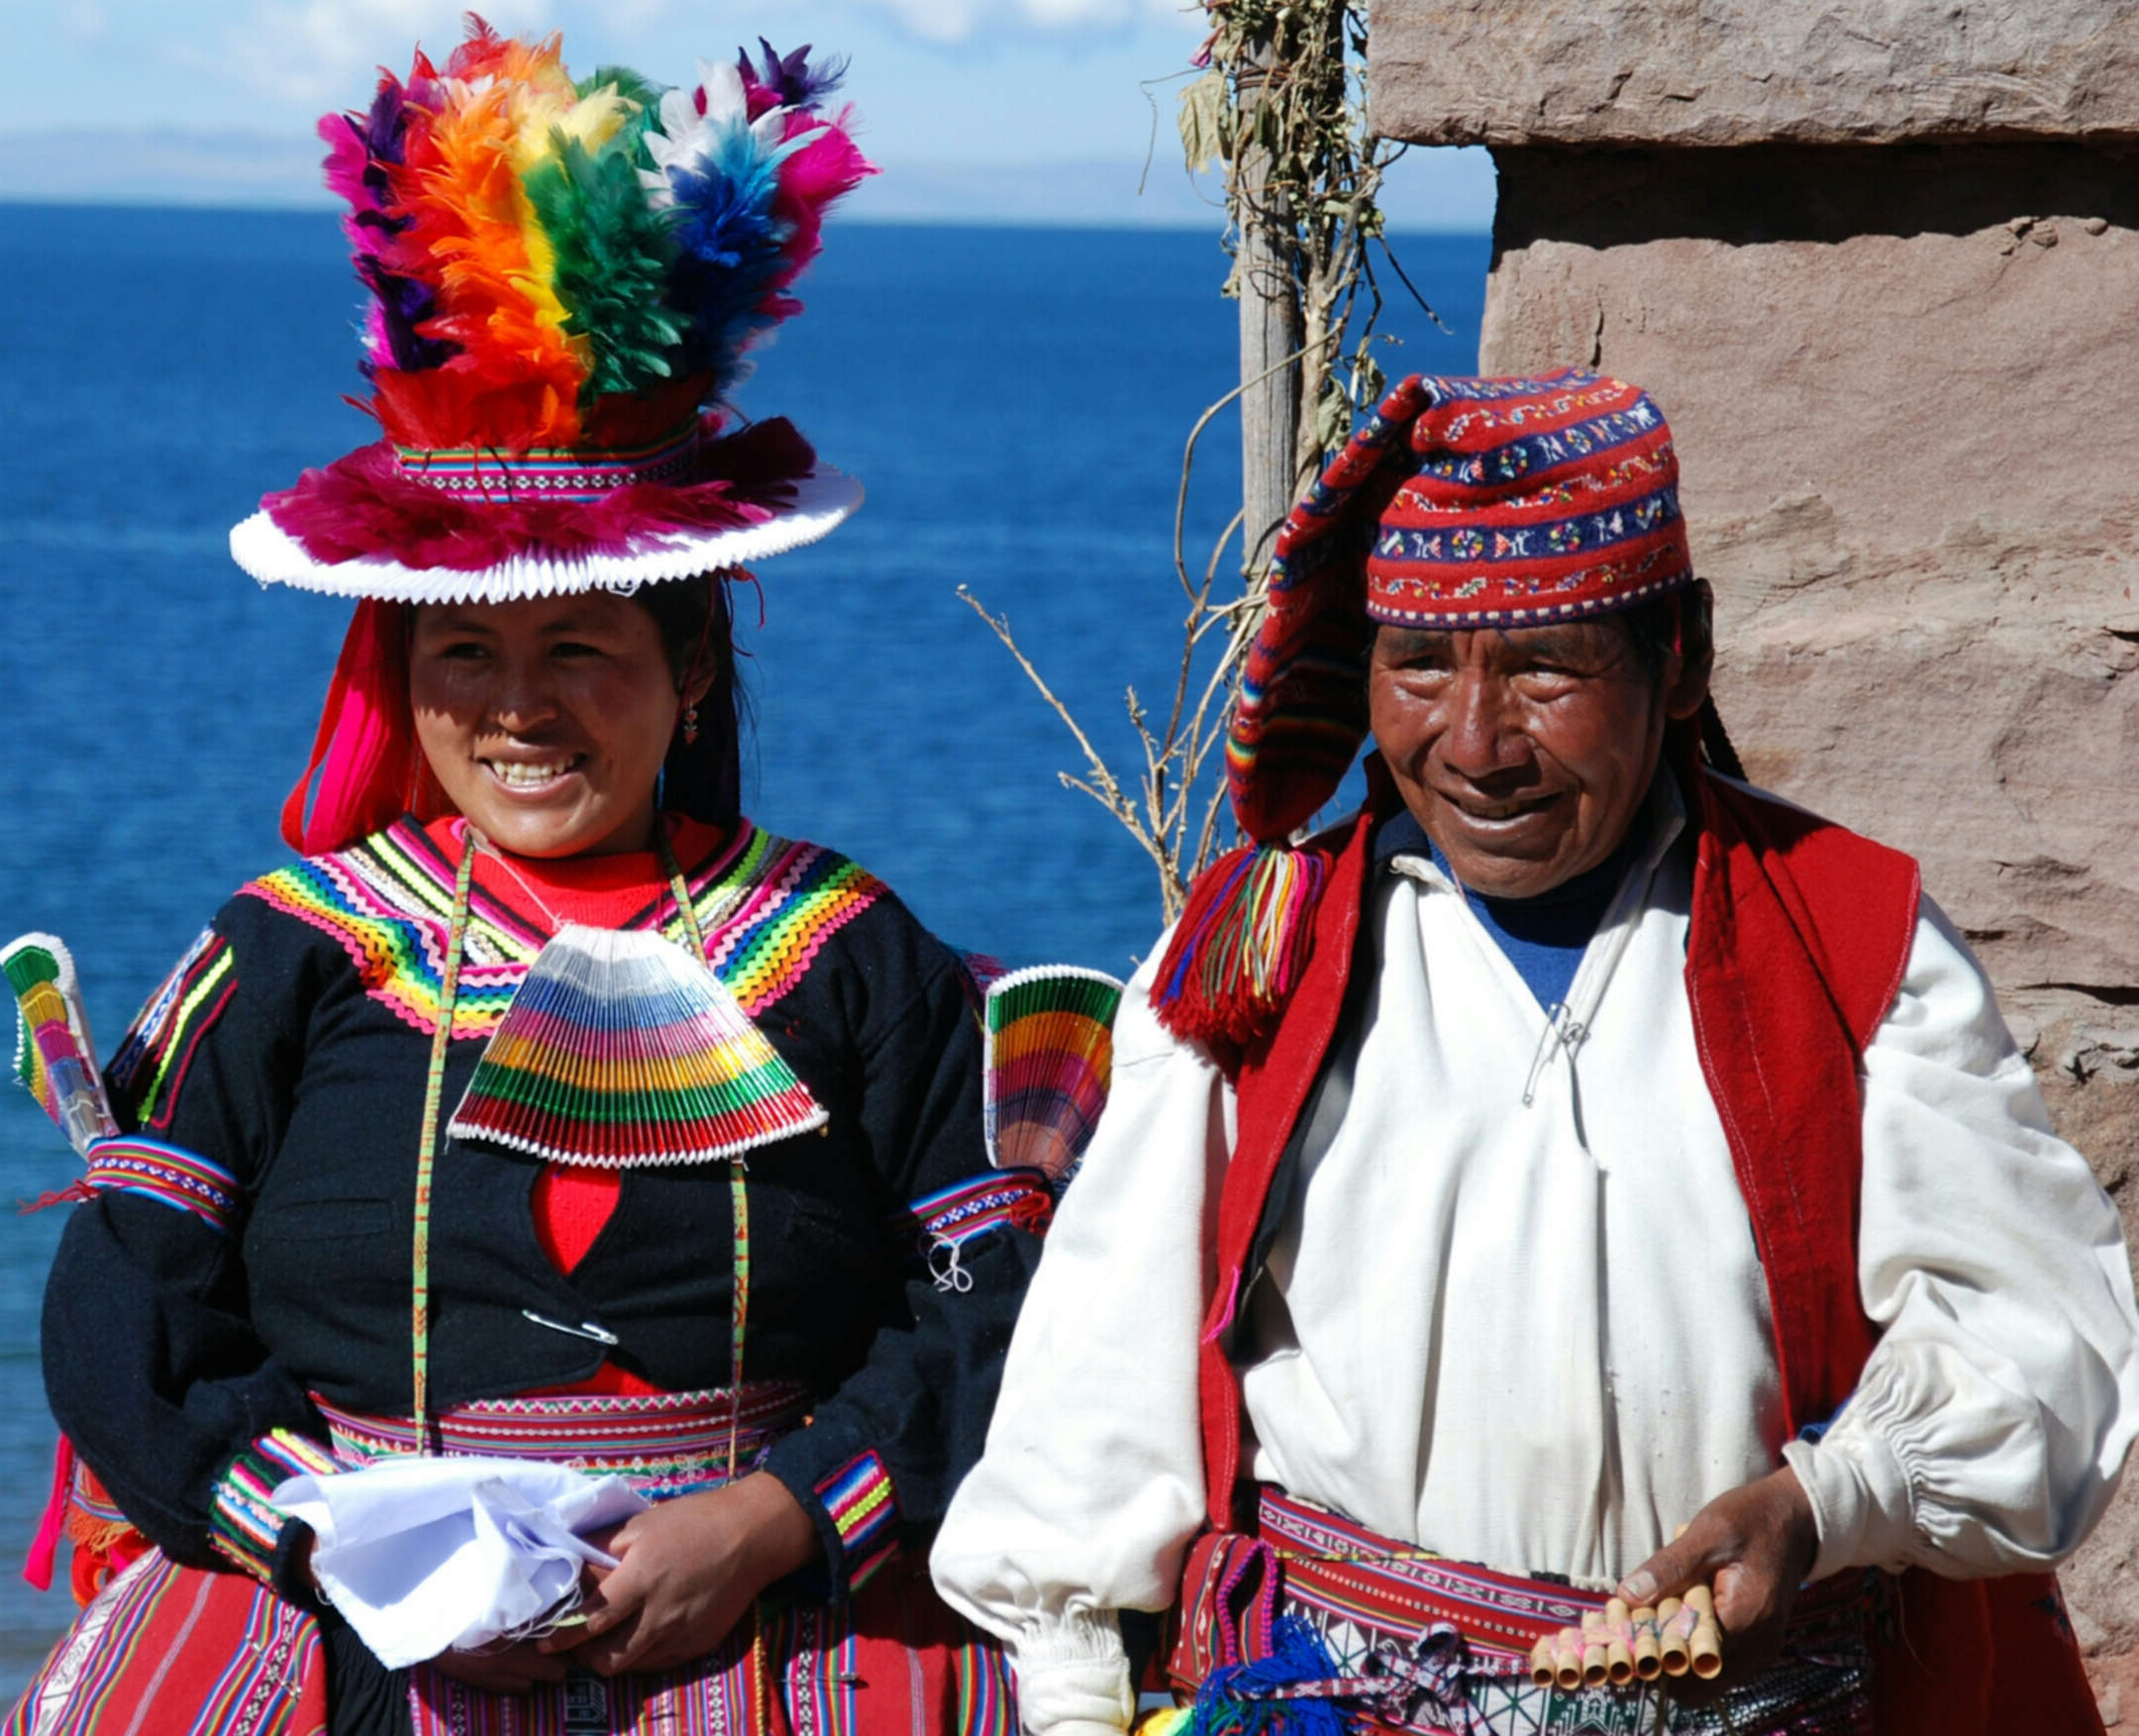 viaggio in Peru foto Lago Titicaca nell'Isola di Taquile